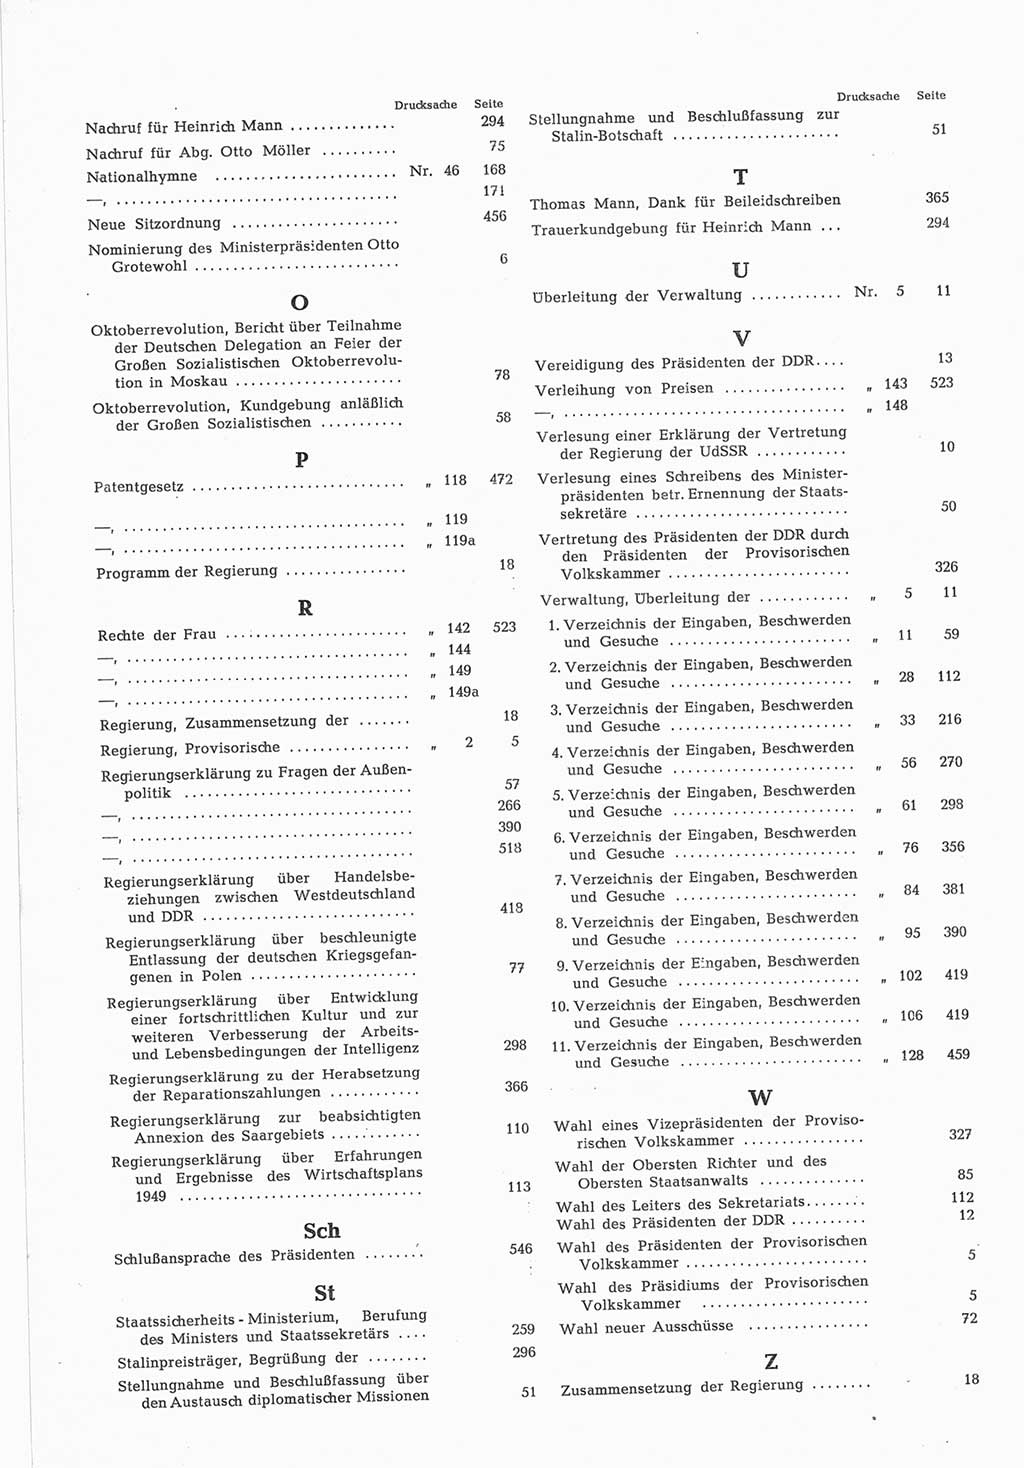 Provisorische Volkskammer (VK) der Deutschen Demokratischen Republik (DDR) 1949-1950, Dokument 850 (Prov. VK DDR 1949-1950, Dok. 850)